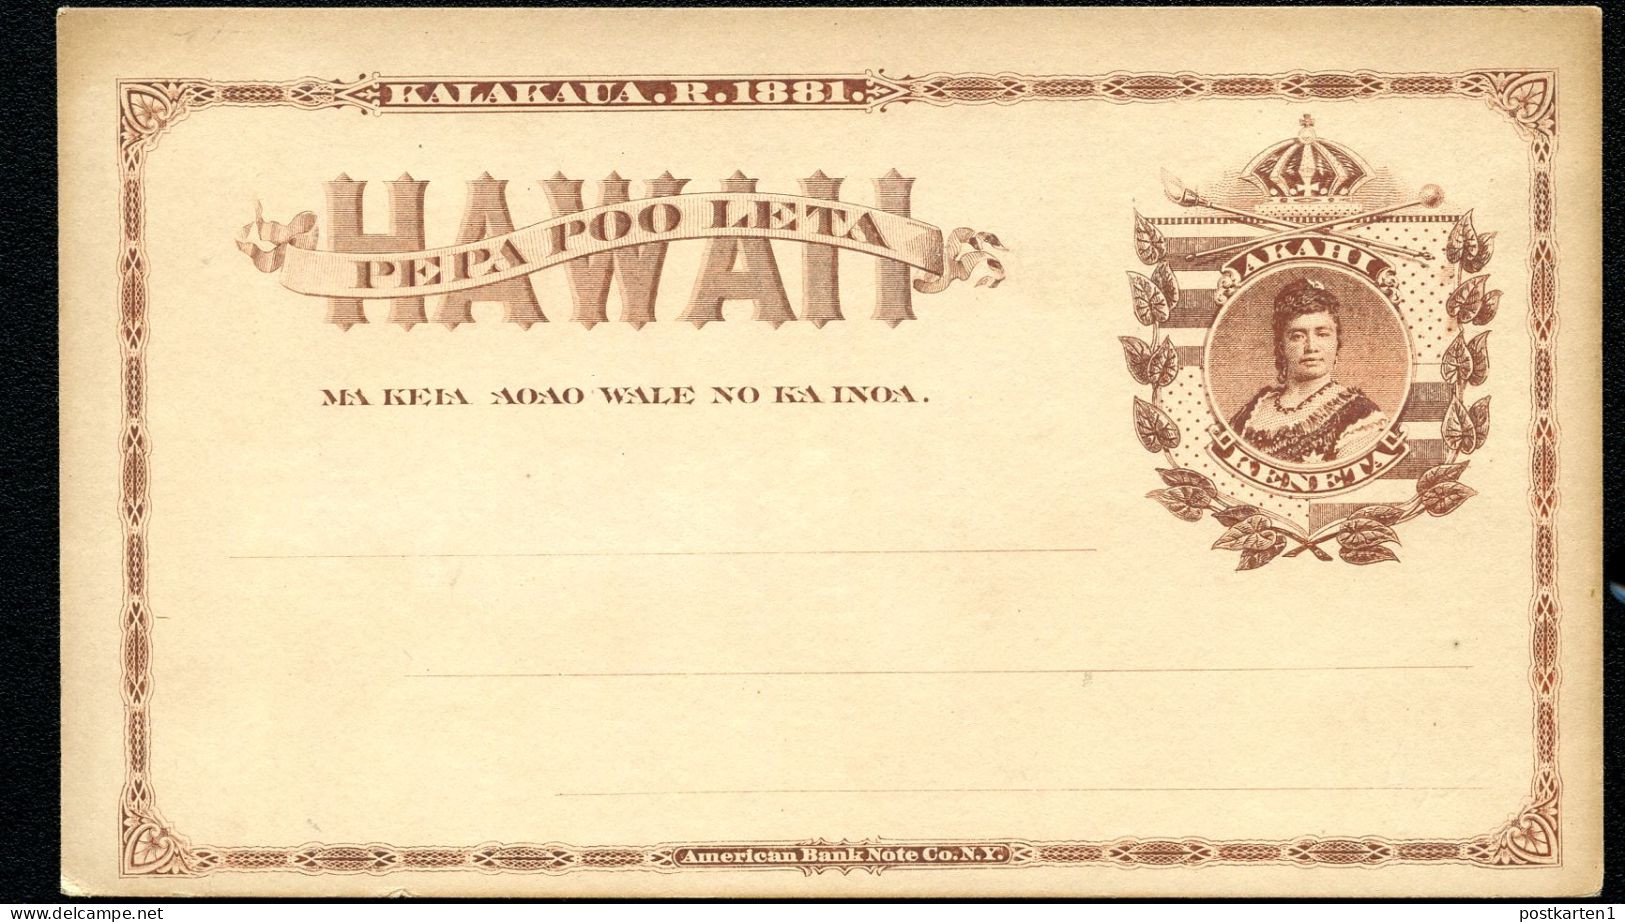 Hawaii Postal Card UX1 Gill Type5 Mint Xf 1882 - Hawaï